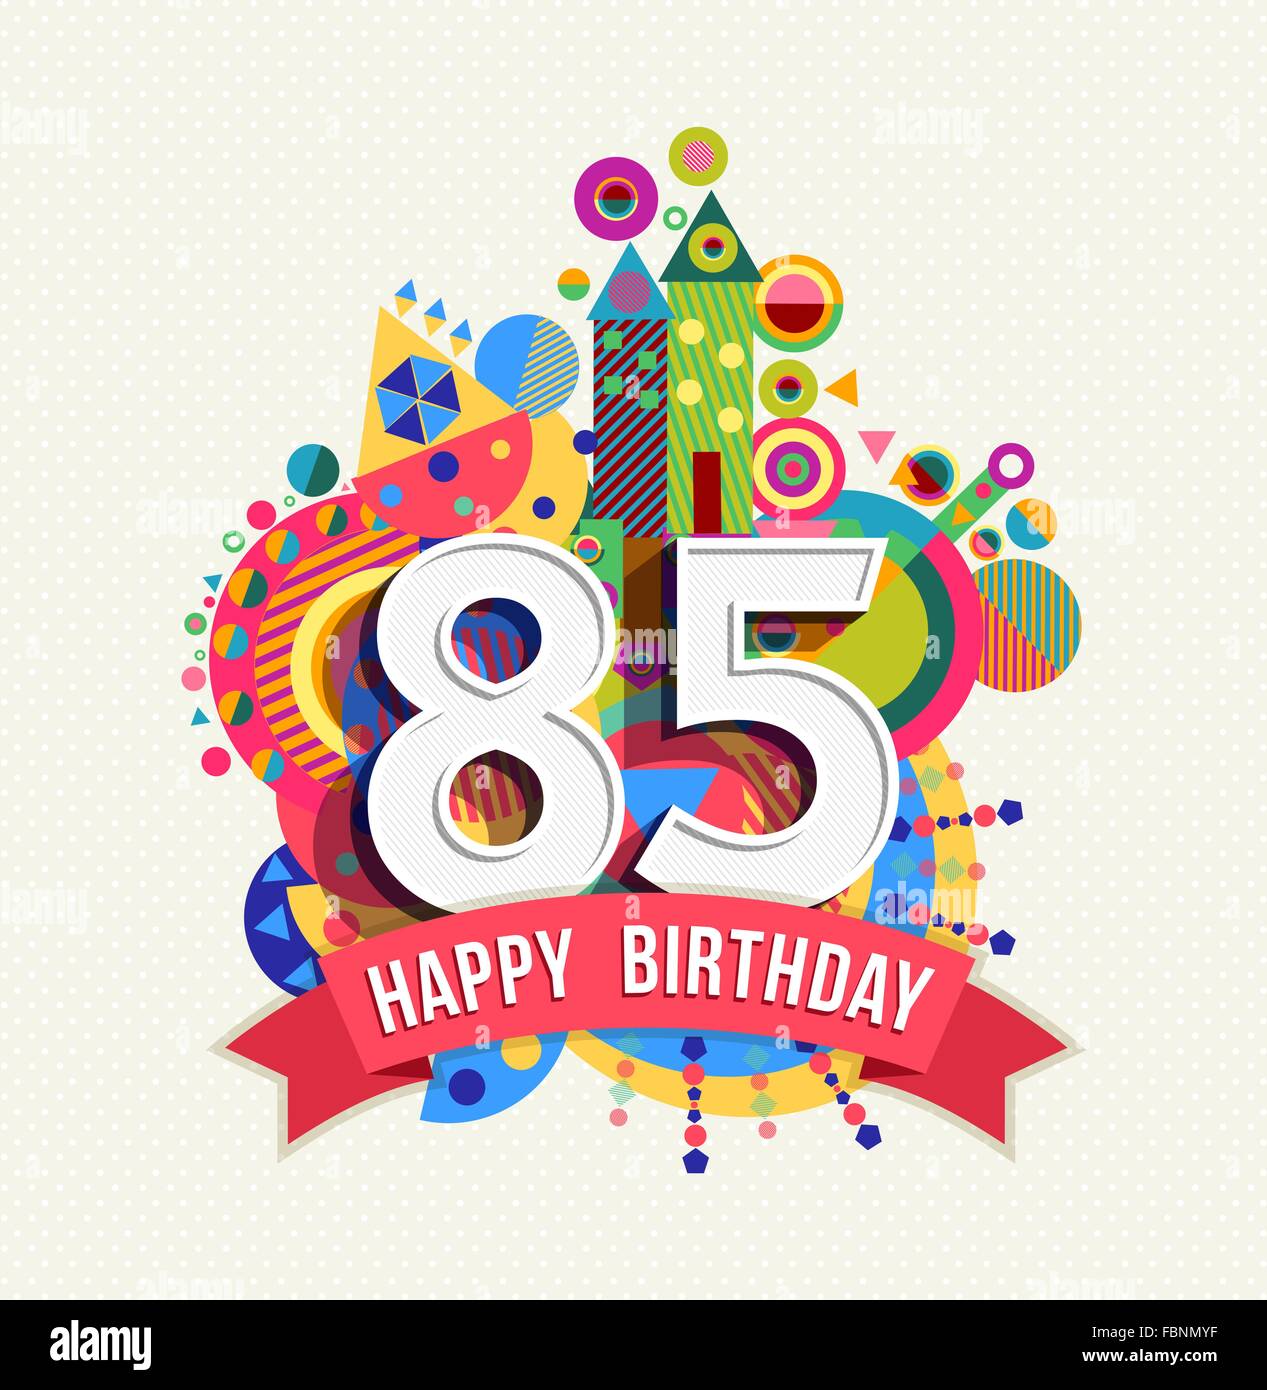 Joyeux anniversaire 85 personnes 85 ans, carte de souhaits fête amusante avec étiquette de texte, nombre et géométrie colorée design. EPS10 Illustration de Vecteur